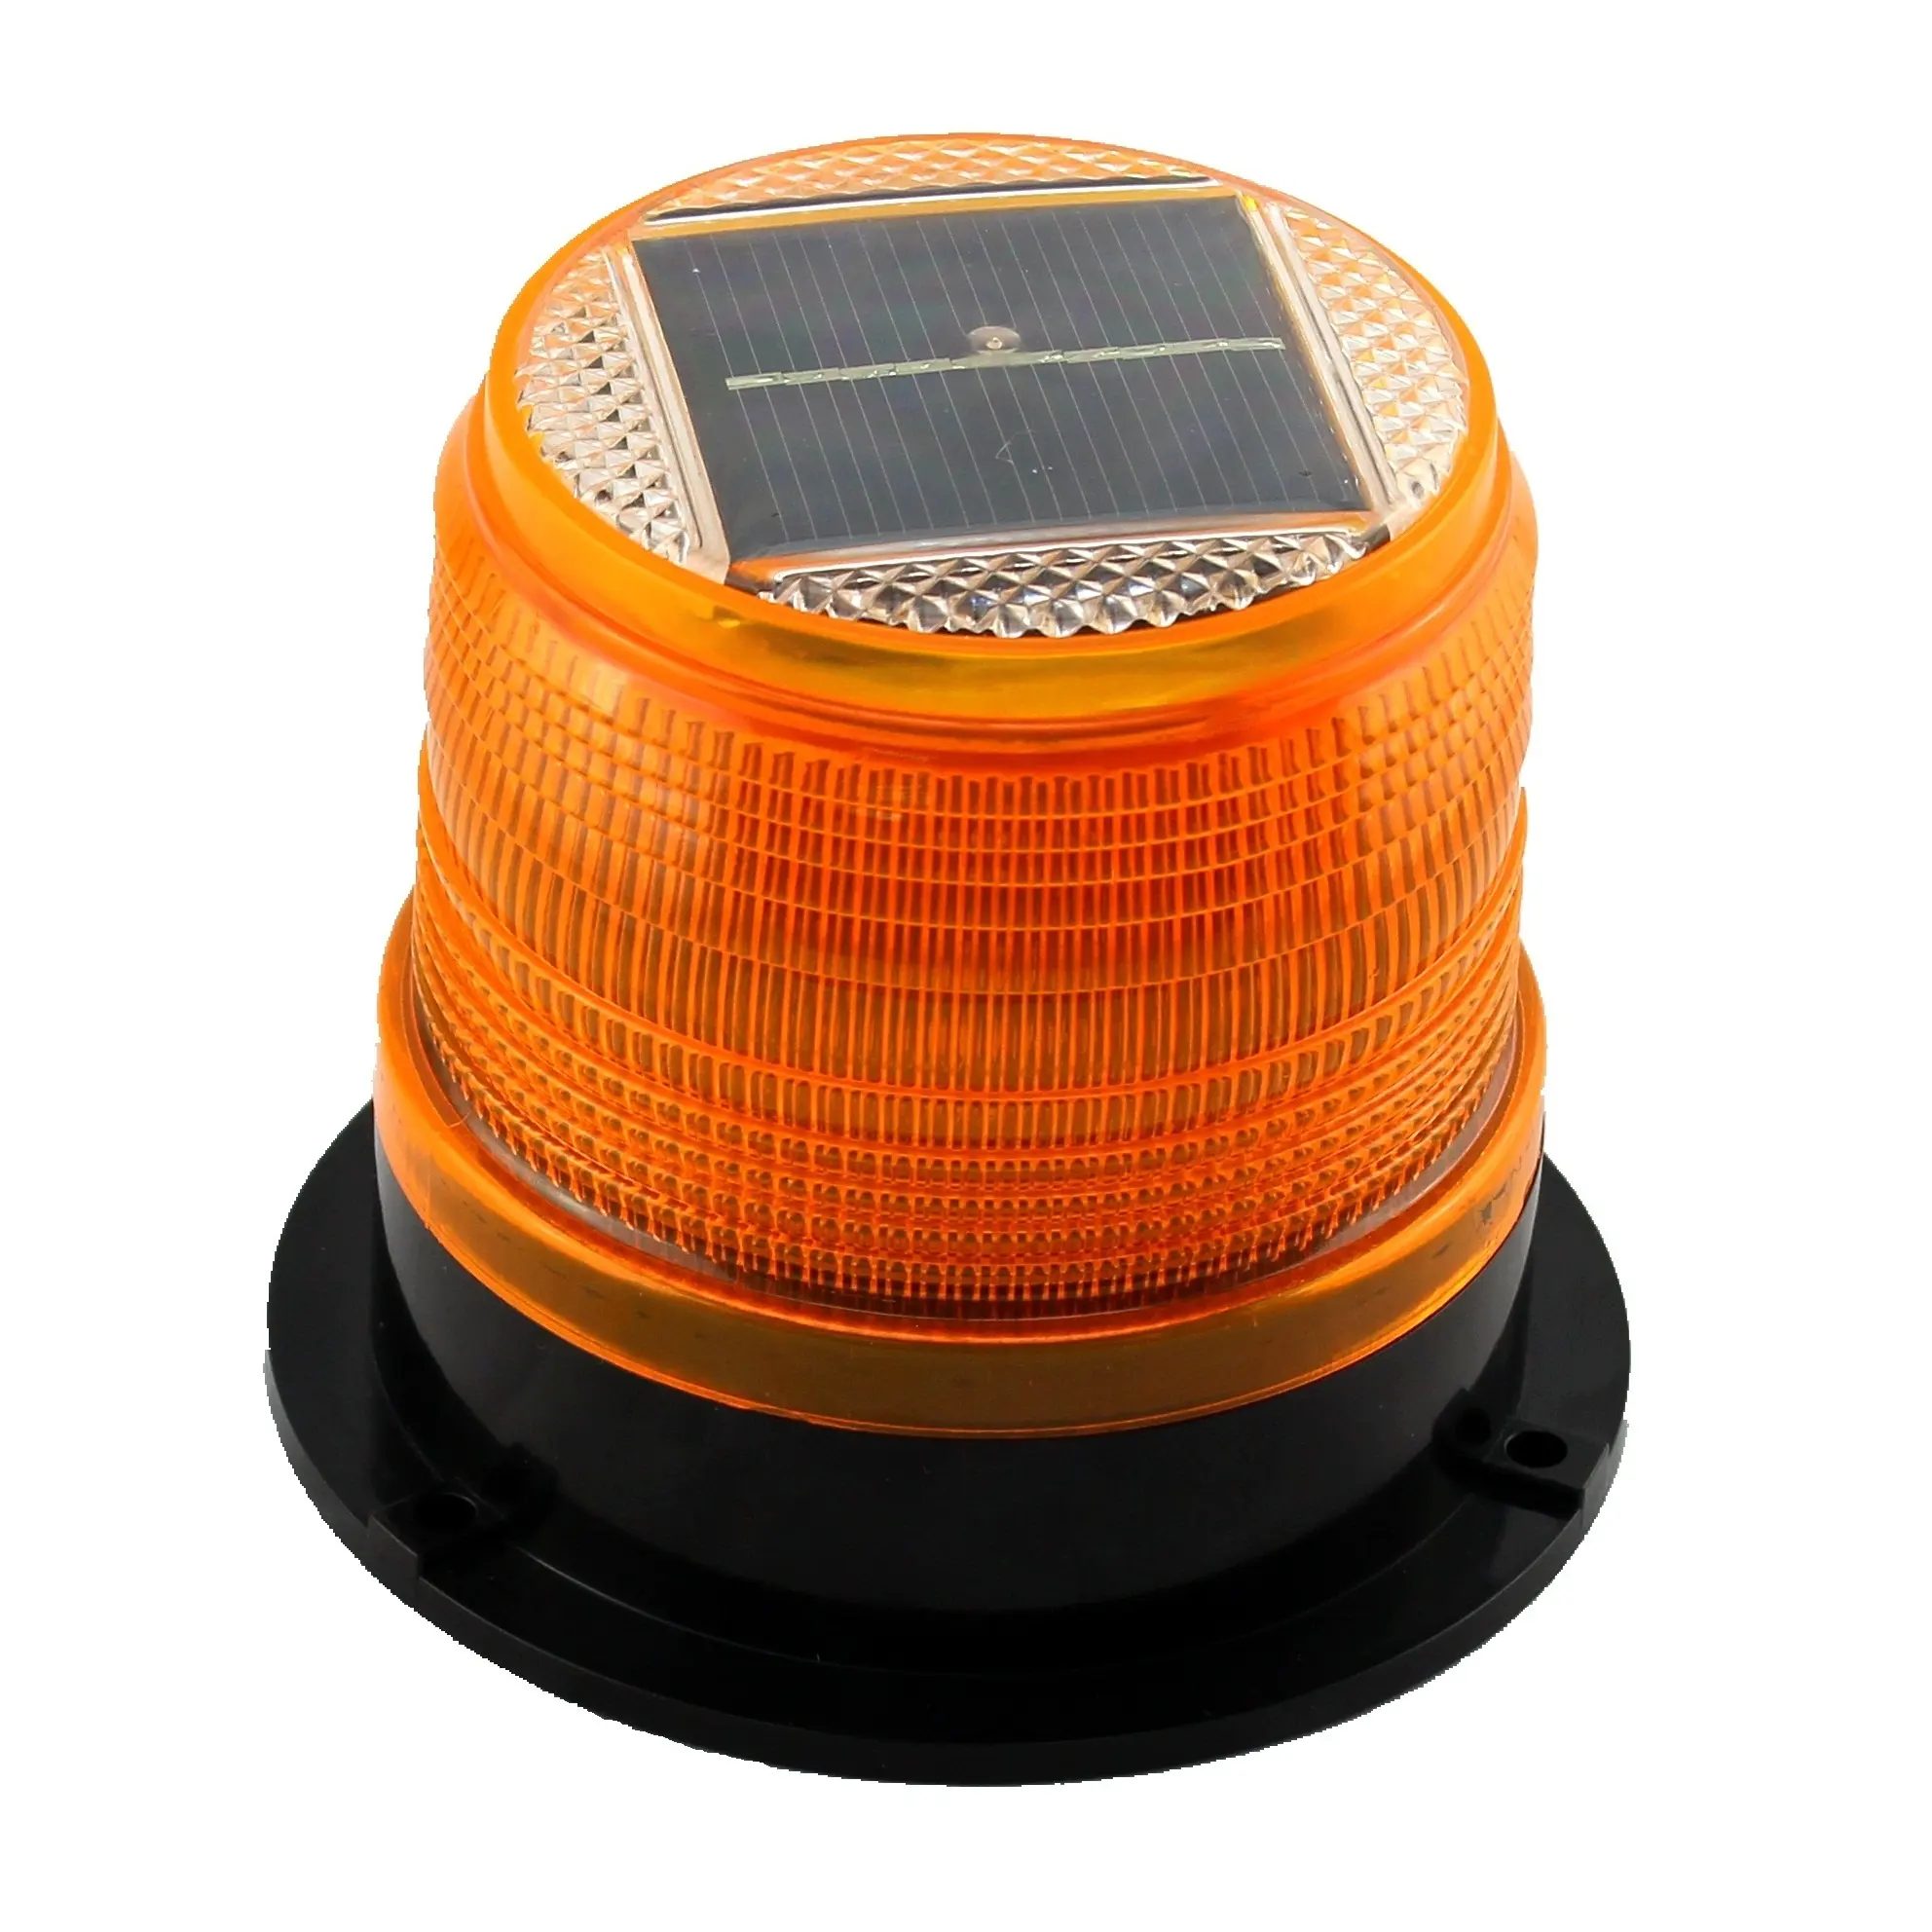 TOP ตะกั่วสีเหลืองอำพันฉุกเฉินพลังงานแสงอาทิตย์ Beacon LED เตือนการจราจรแม่เหล็กกระพริบโคมไฟแฟลช